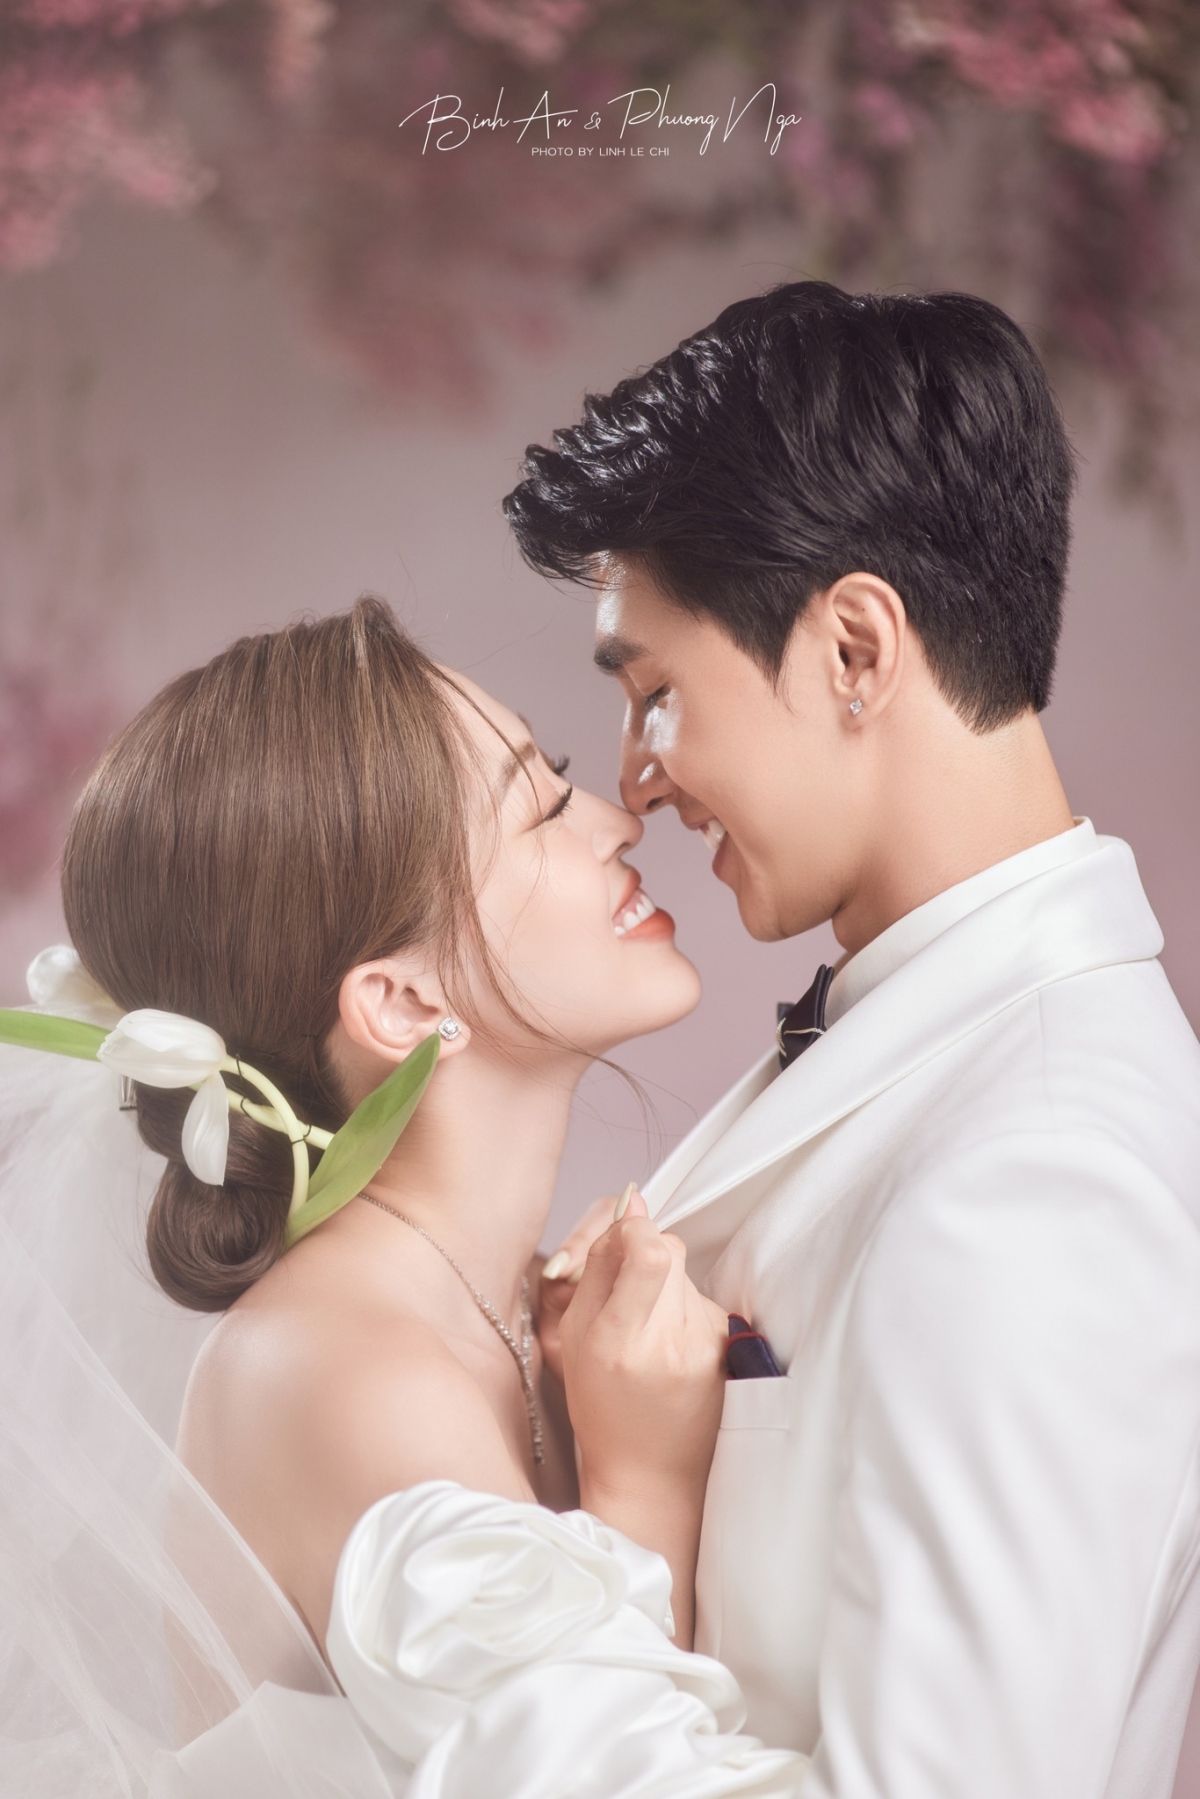 Giai điệu nhẹ nhàng, không khí lãng mạn được thể hiện một cách hoàn hảo trong những bức ảnh cưới Hàn Quốc đẹp nhất. Với phong cách trang phục đậm chất truyền thống, những cặp đôi sẽ có những khoảnh khắc đáng nhớ nhất trong ngày trọng đại của mình. Hãy cùng chiêm ngưỡng vẻ đẹp lộng lẫy của ảnh cưới Hàn Quốc.